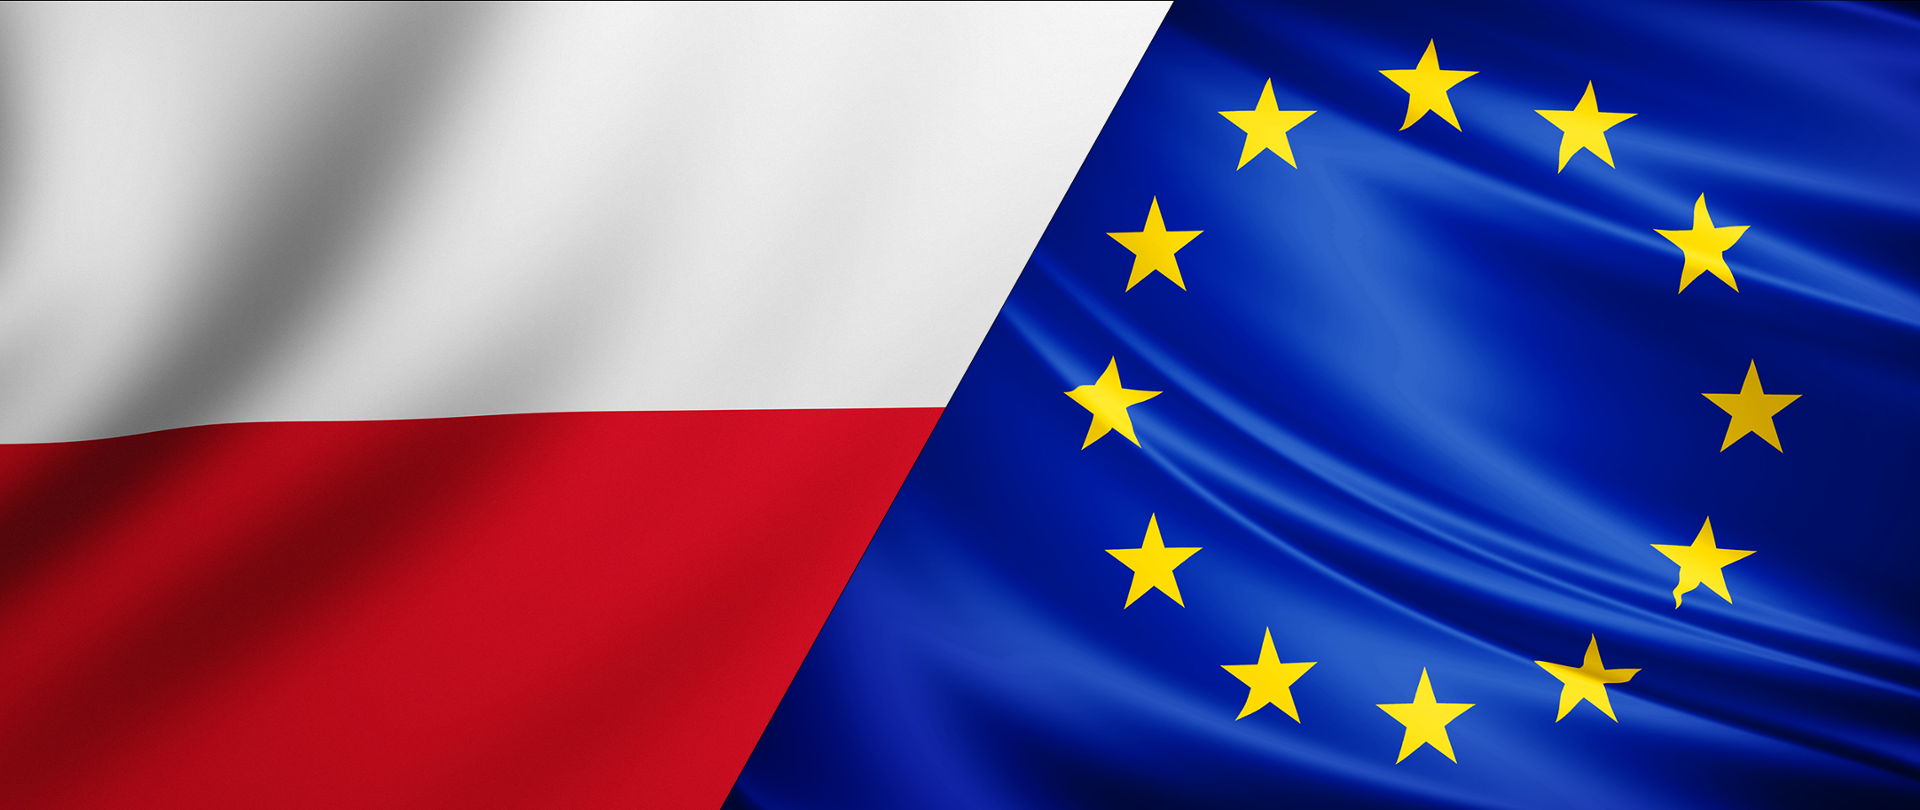 Na zdjęciu widzimy dwie połączone ze sobą flagi (po prawej stronie znajduje się flaga Unii Europejskiej. Flaga Unii Europejskiej - na fladze przedstawiony jest okrąg złożony z dwunastu złotych gwiazd na błękitnym tle. Po lewej znajduje się flaga Polski. Flaga Polski jest prostokątem podzielonym na dwa poziome pasy: biały (u góry) i czerwony).